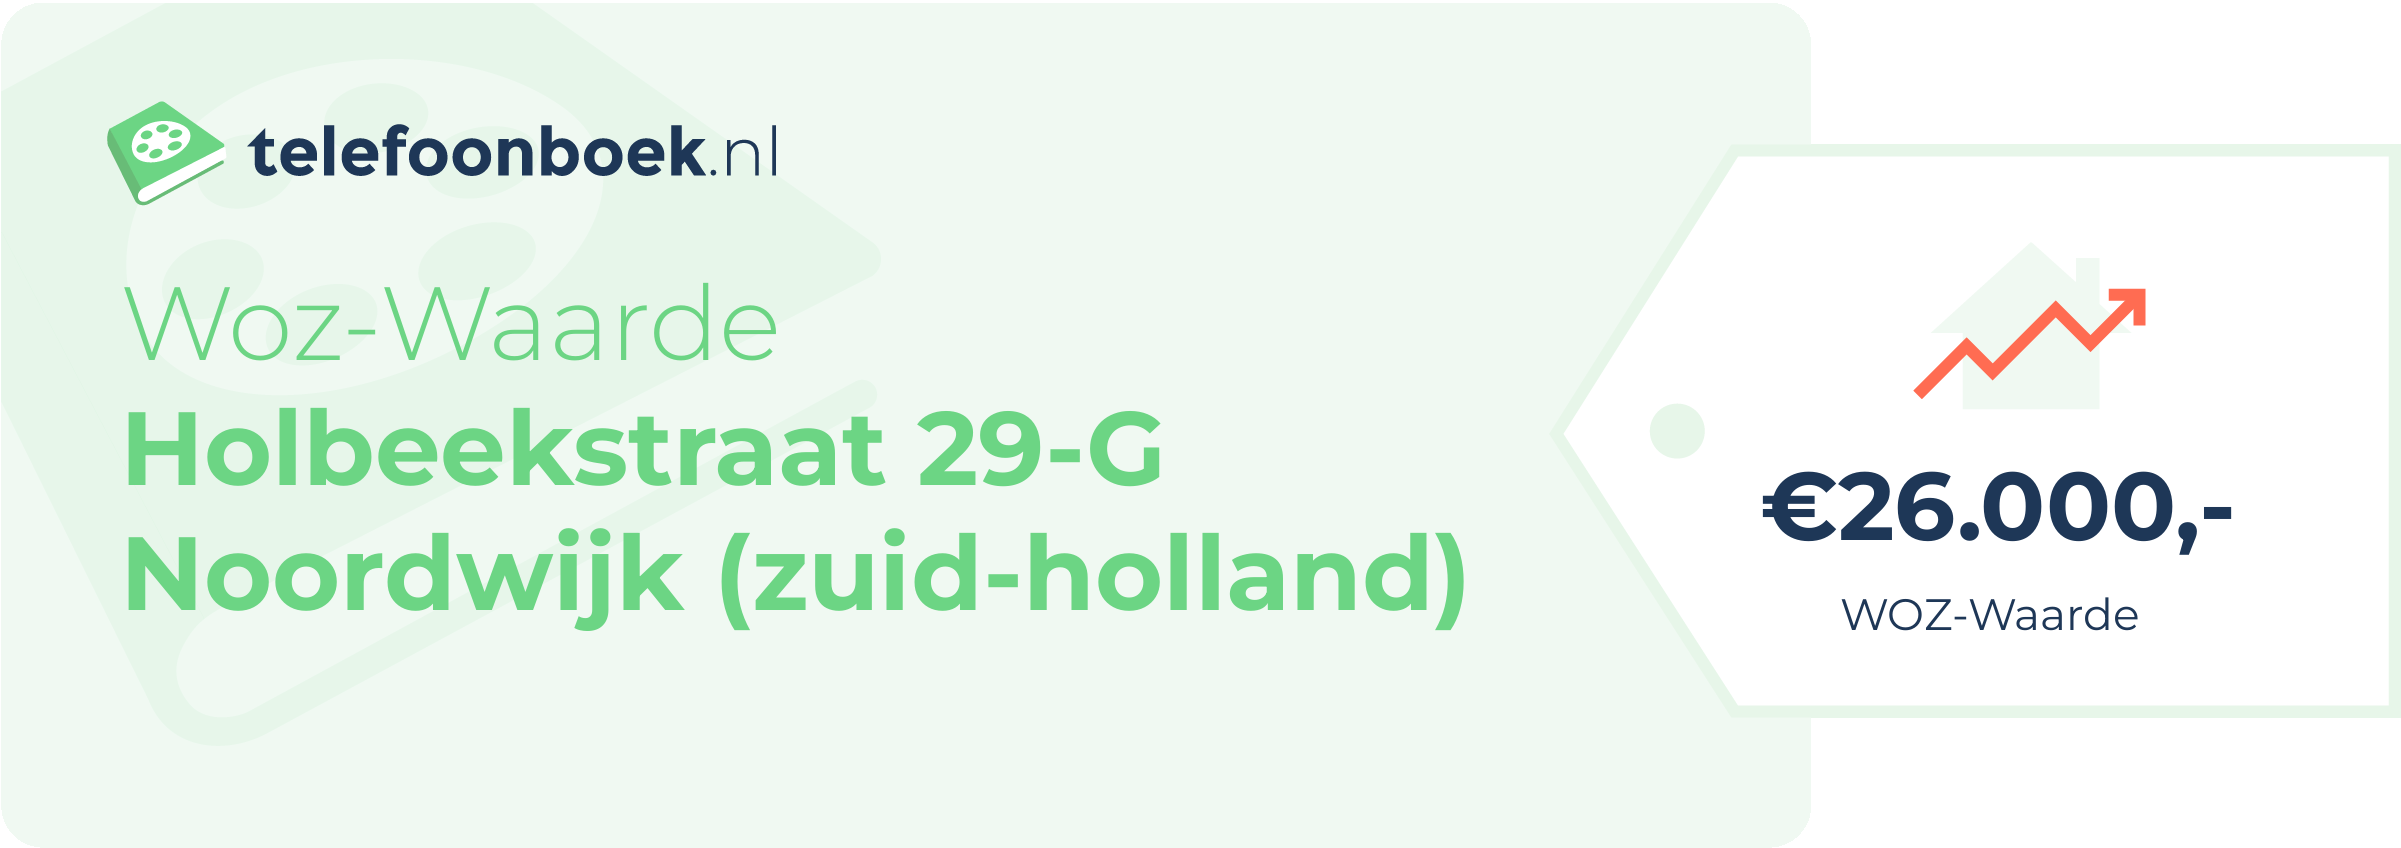 WOZ-waarde Holbeekstraat 29-G Noordwijk (Zuid-Holland)